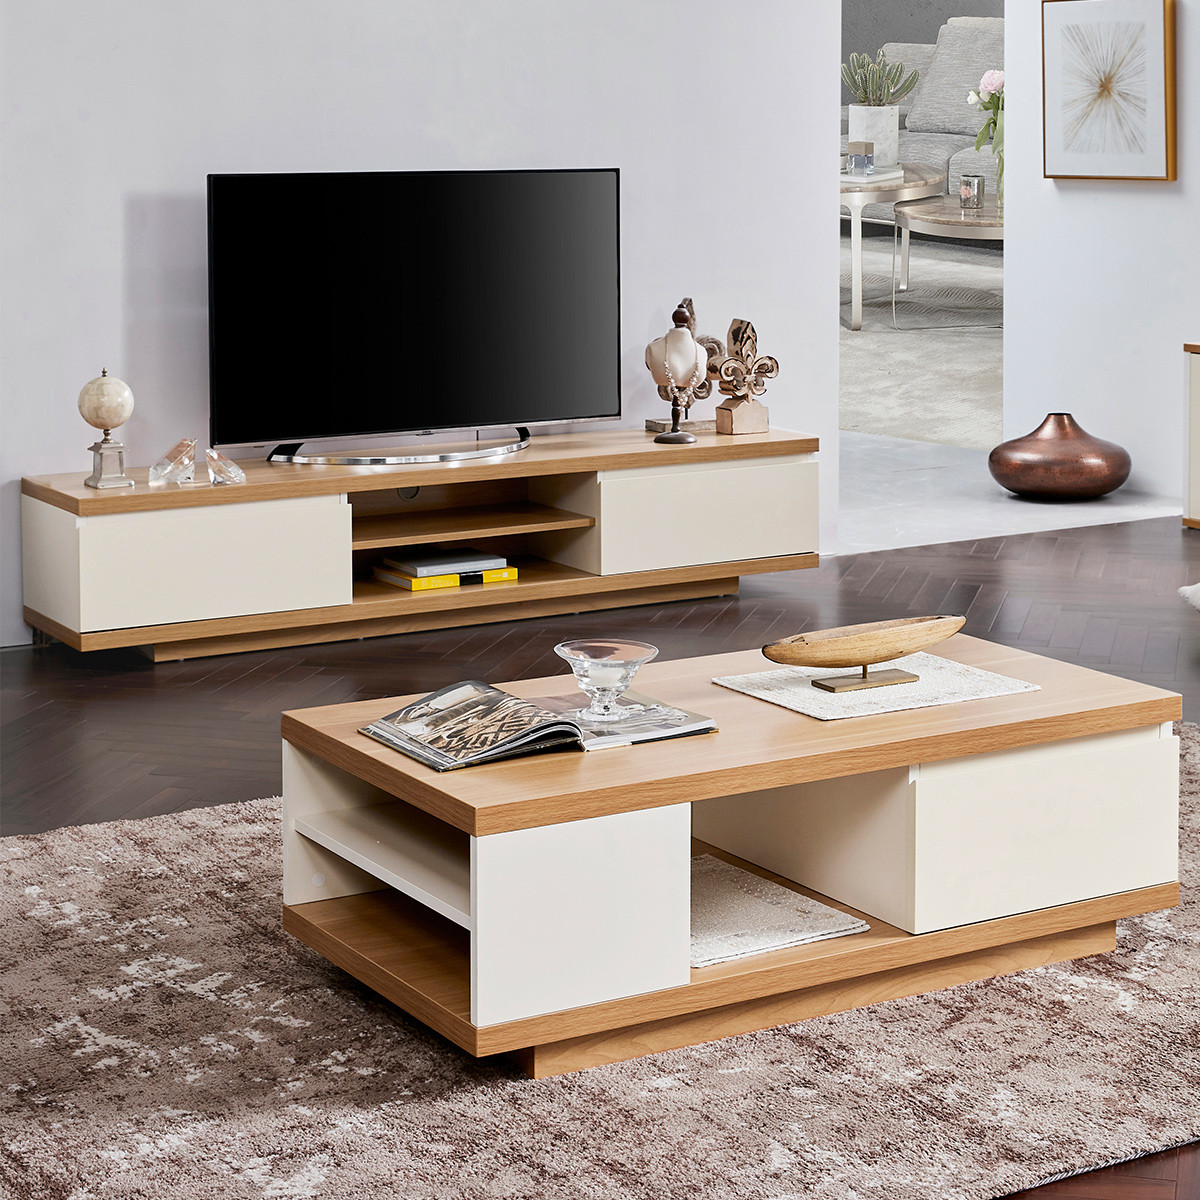 现代简约茶几电视柜小户型组合家具客厅套装pt1599